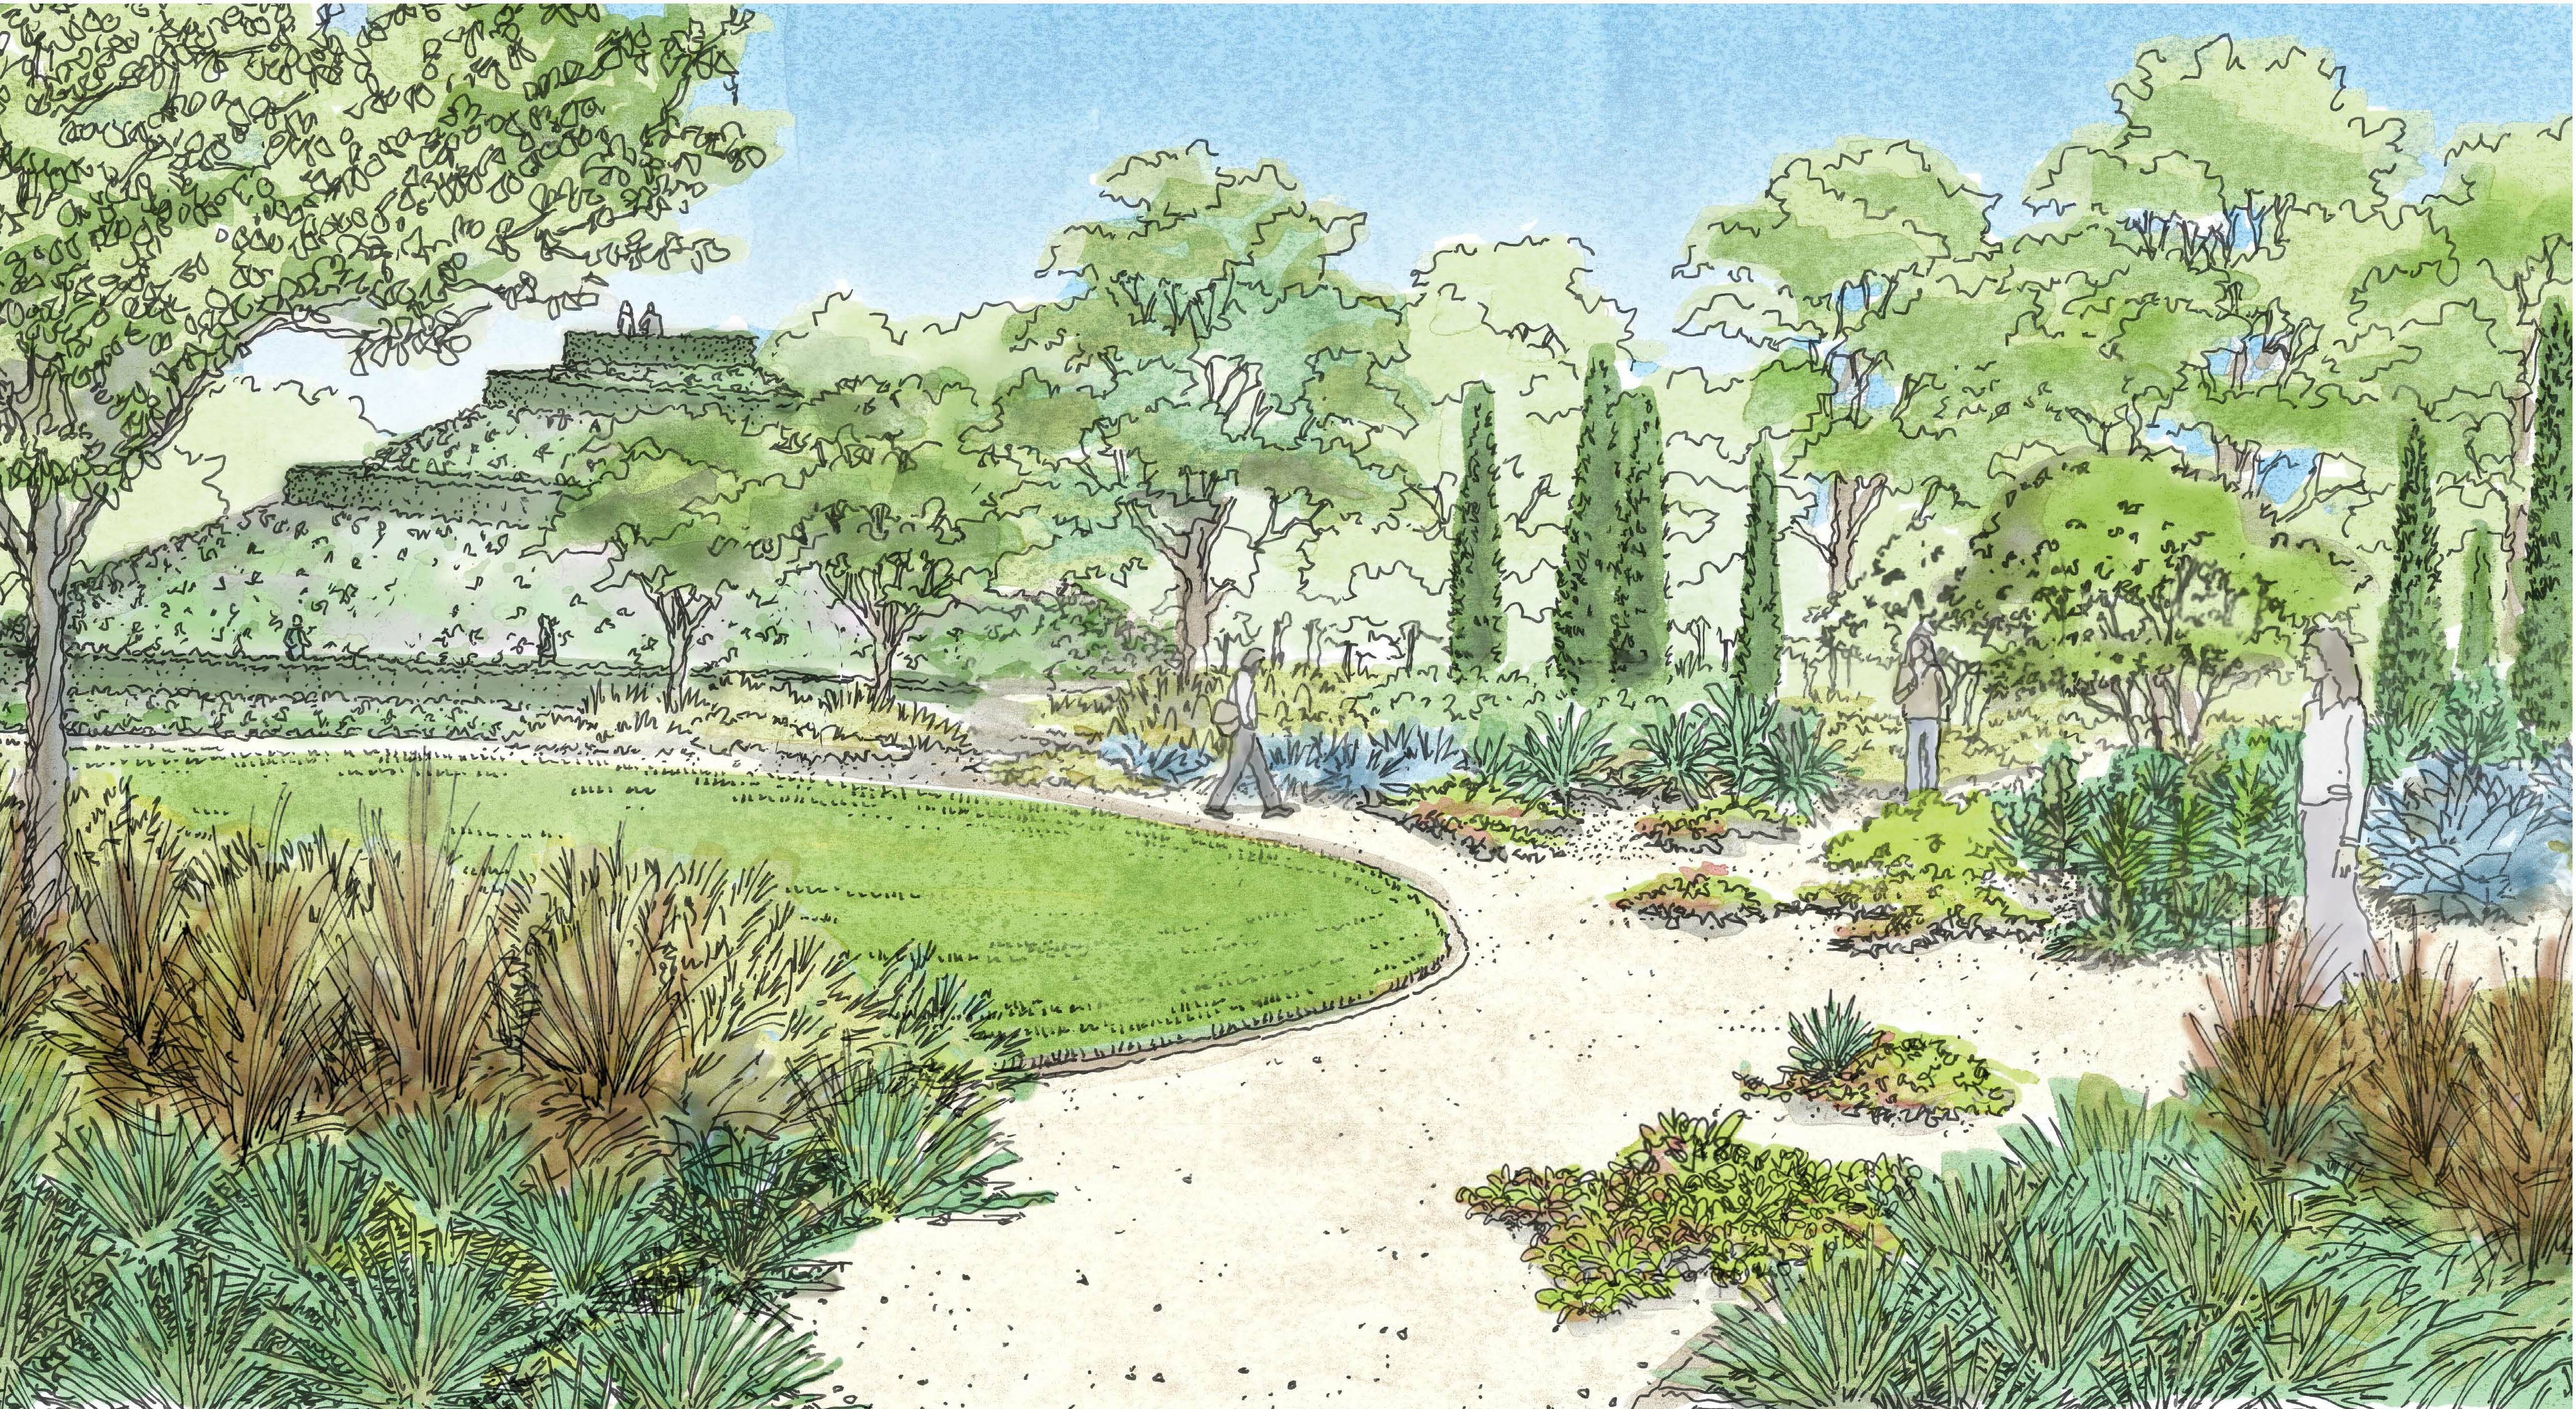 4 mcgovern centennial gardens project hoerr schaudt